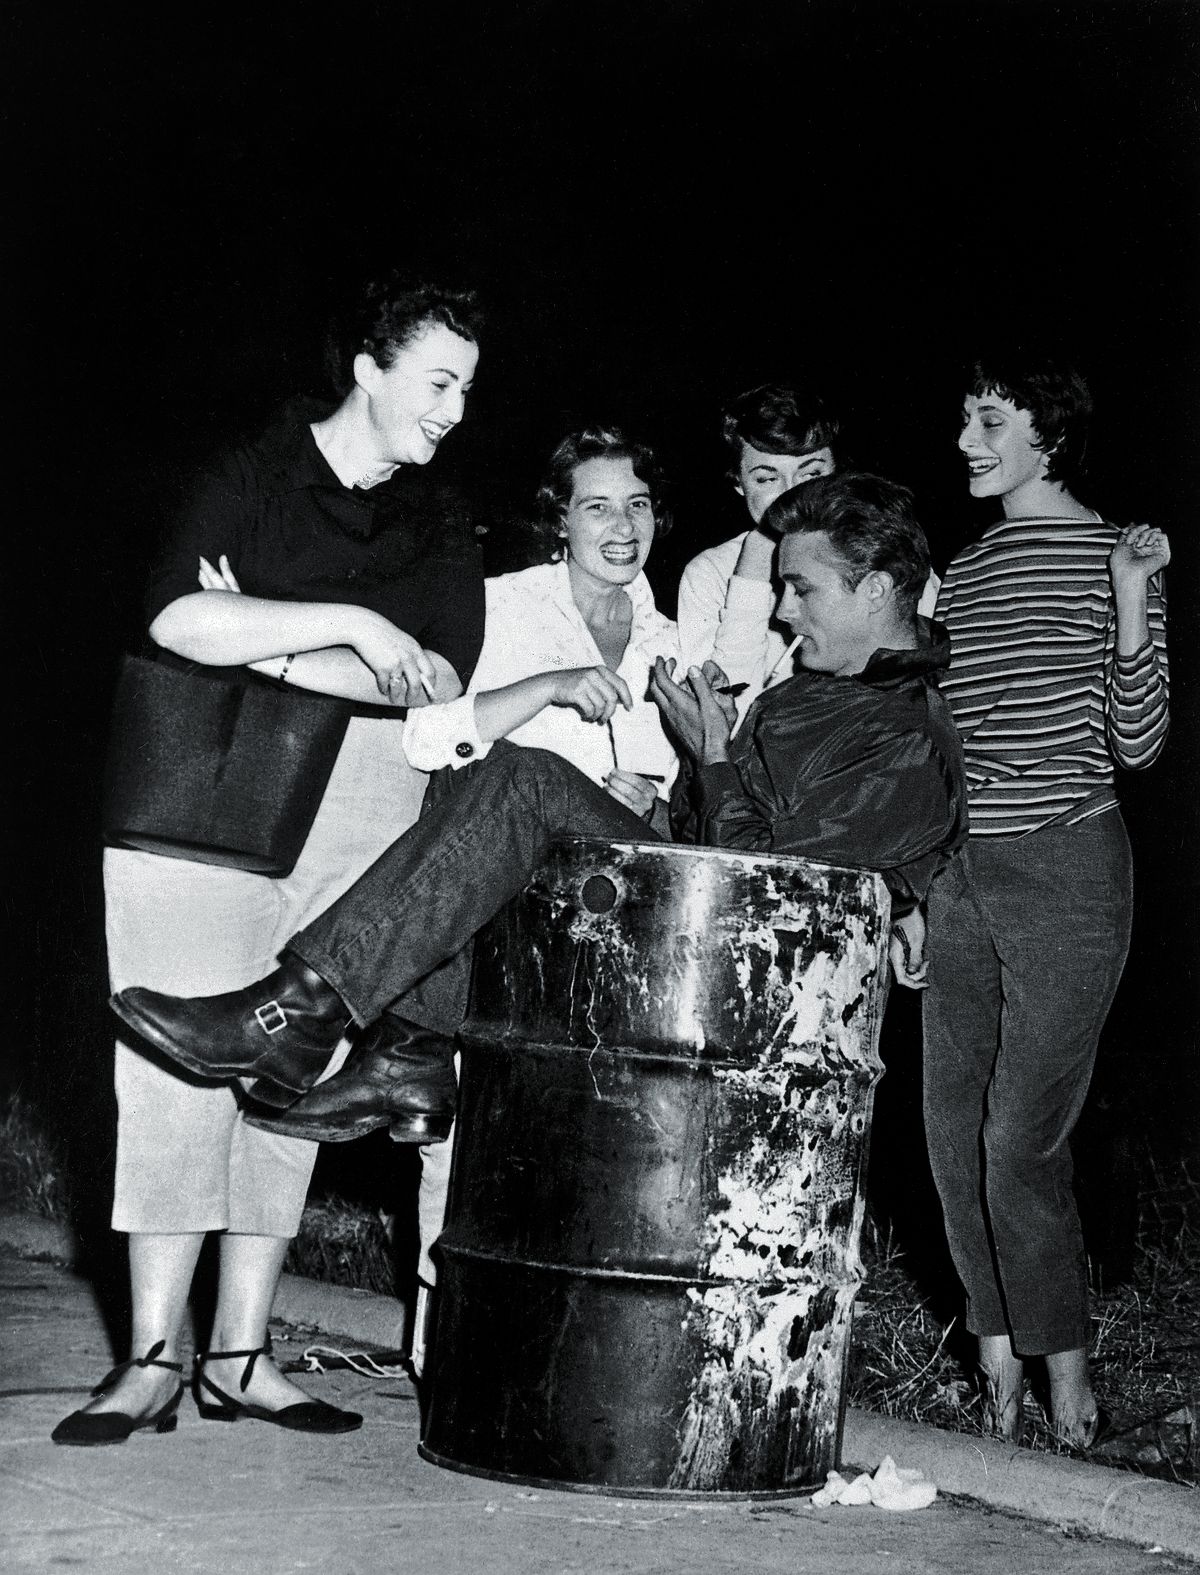 Джеймс Дин раздает автографы группе фанатов, сидя в мусорном баке